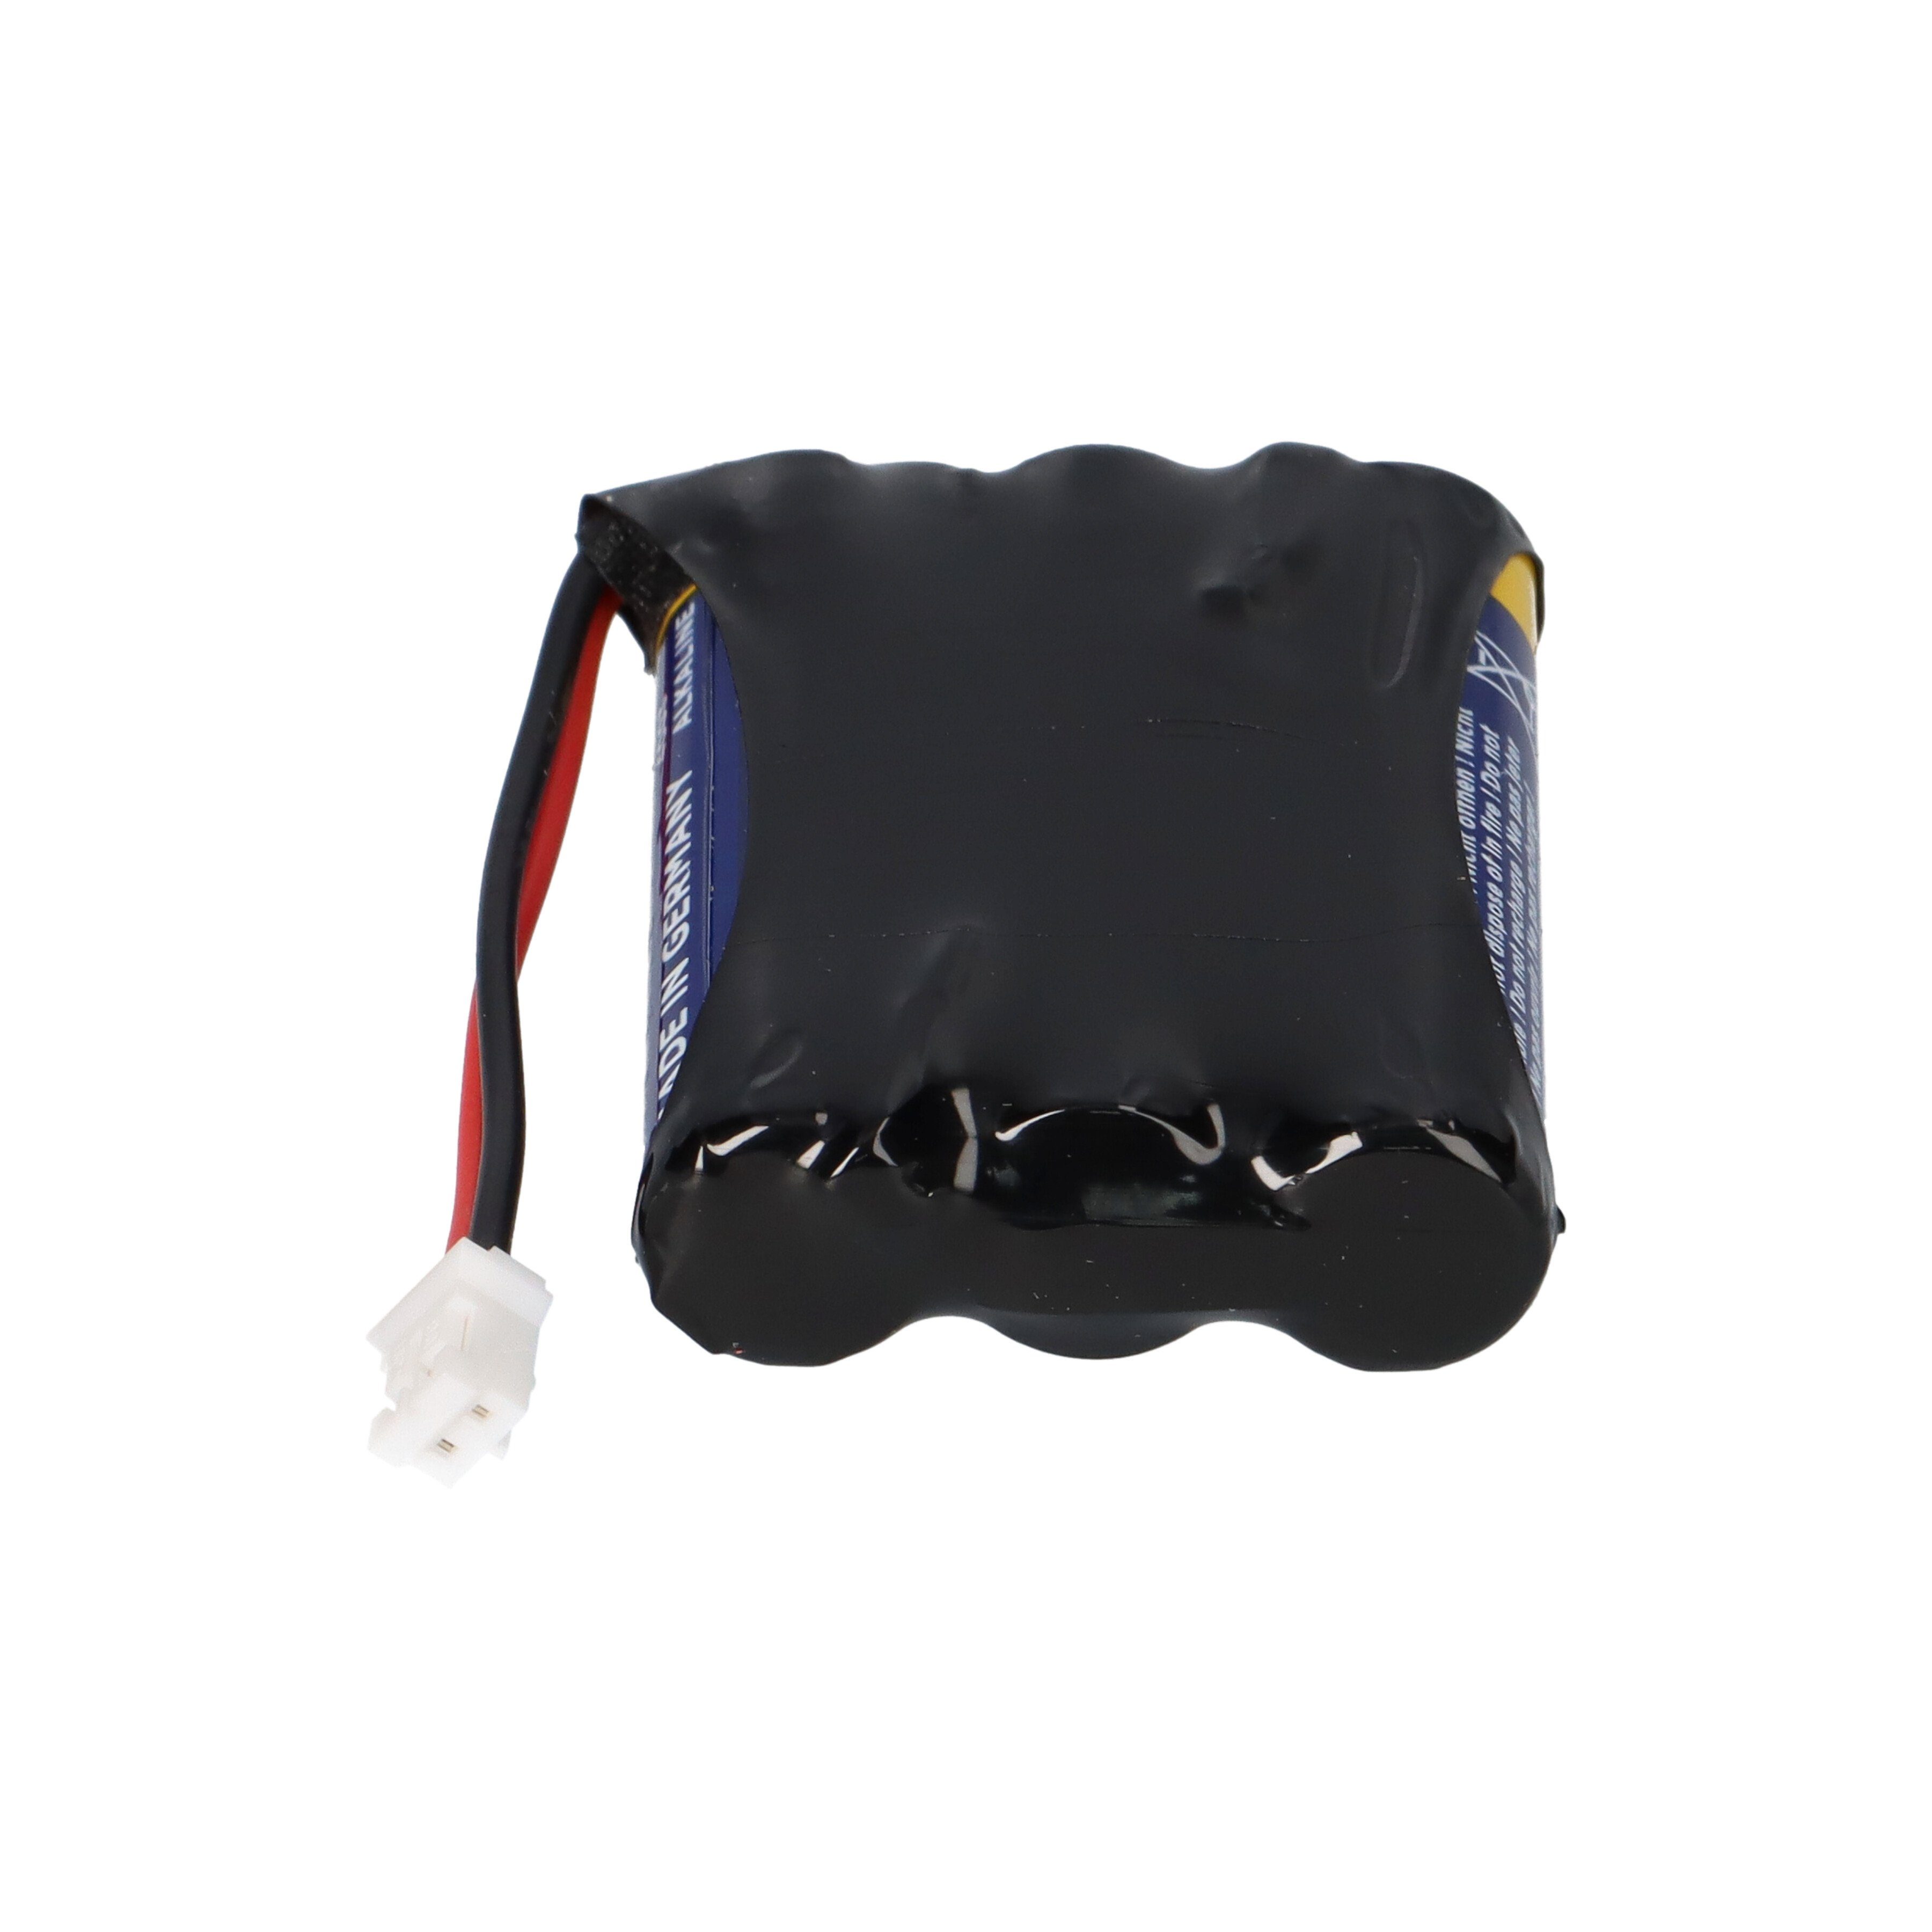 Akkuman Batteriepack 38400200 Micro Batterie AAA 4,5V kompatibel Safe-O-Tronic